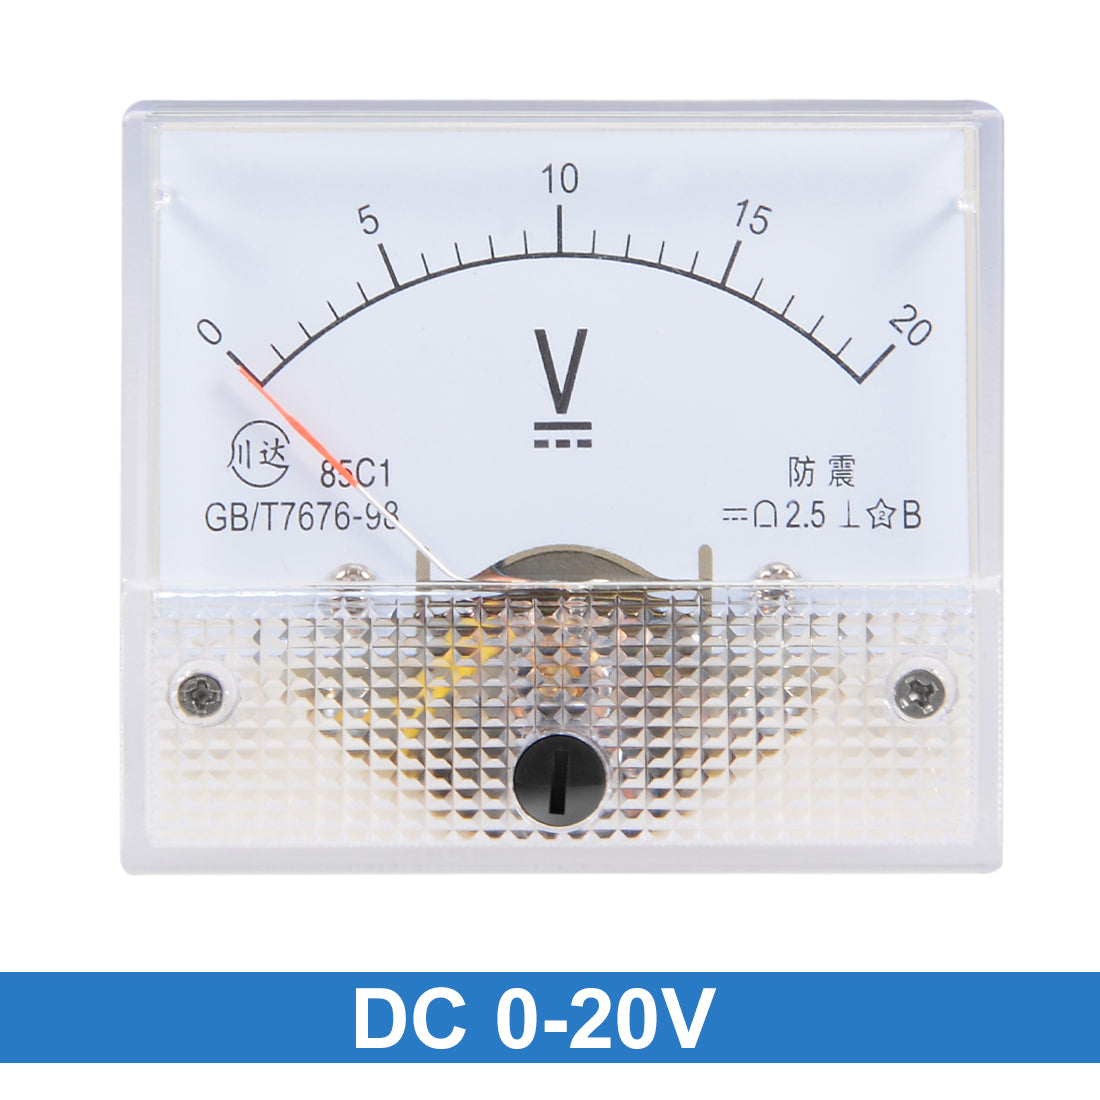 uxcell Uxcell DC 0V-20V Analog Panel Voltage Gauge Volt Meter 85C1 2.5% Error Margin